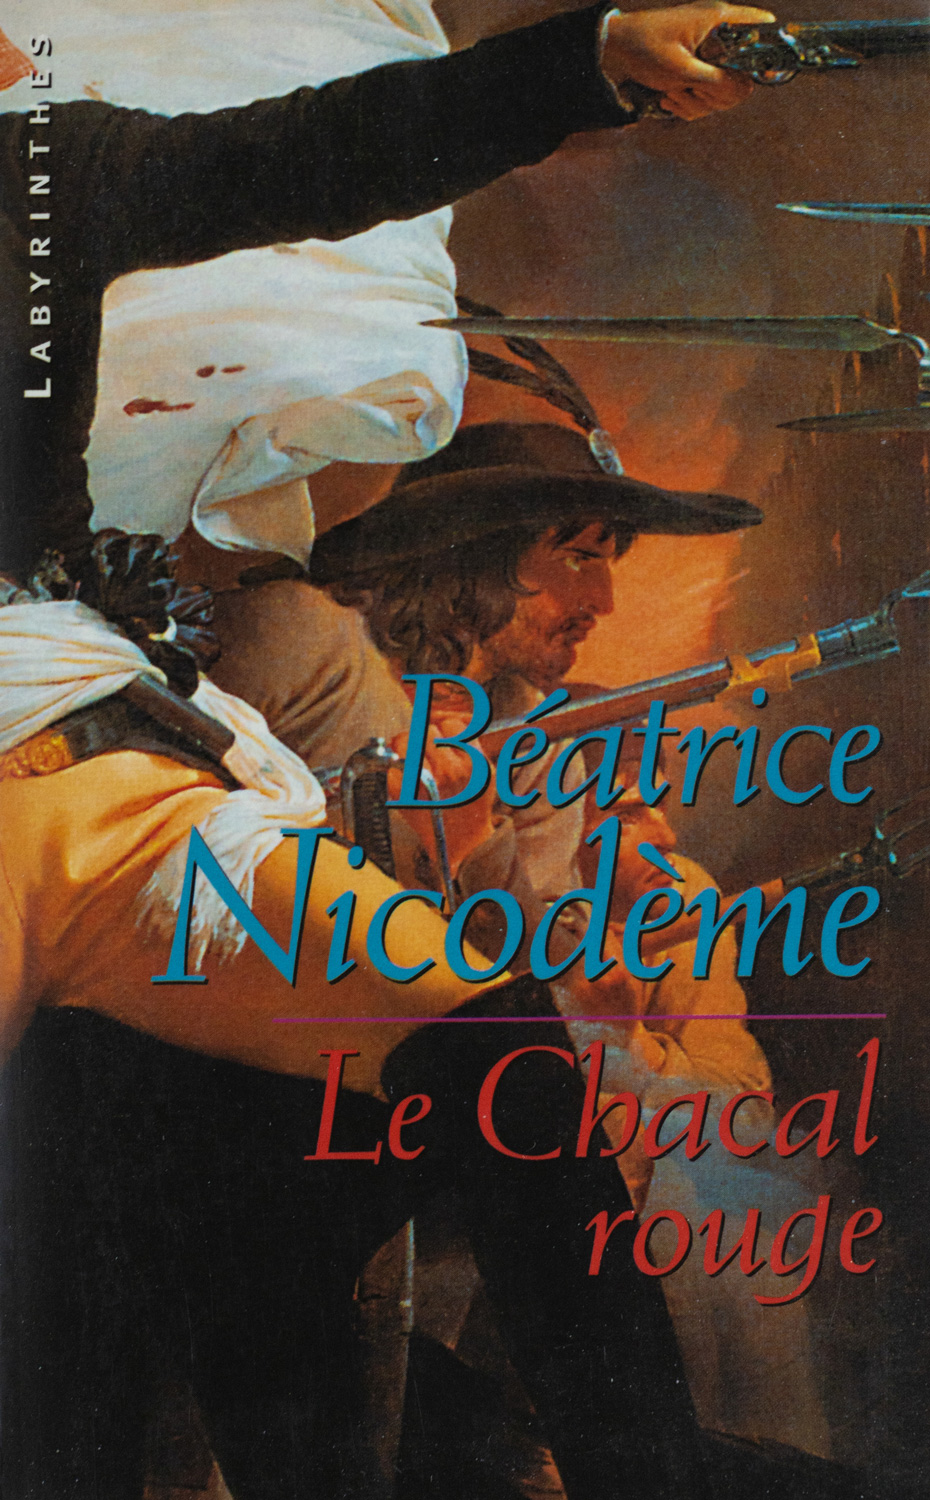 Beatrice Nicodeme autrice couverture du roman Le chacal rouge